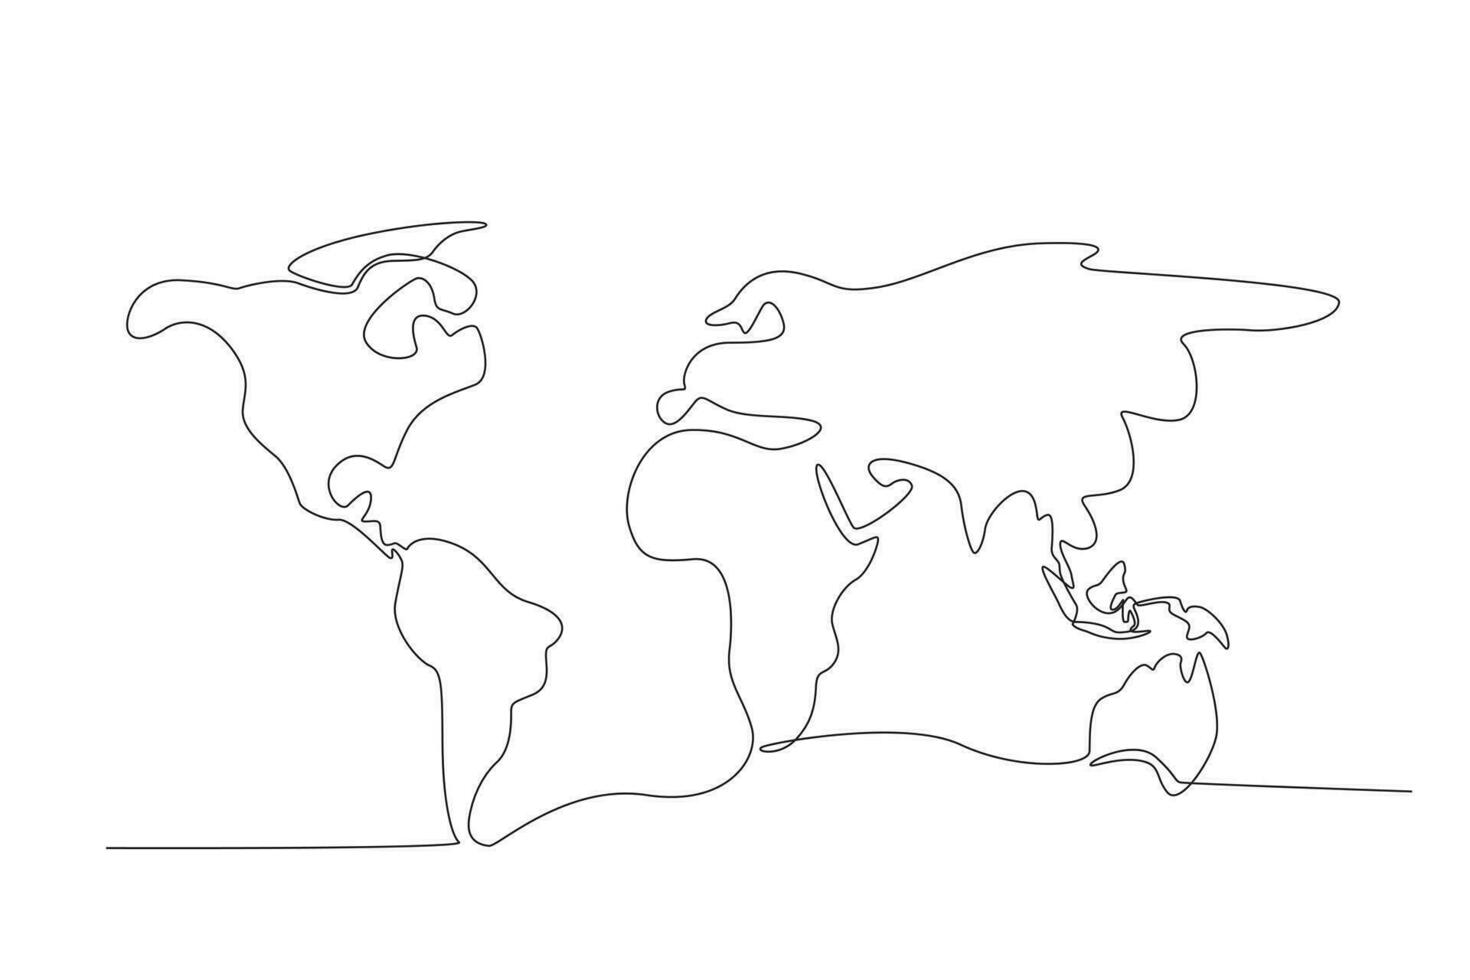 förenklad värld Karta. kontinuerlig ett linje teckning av värld atlas minimalistisk vektor illustration design. enkel linje modern grafisk stil. hand dragen grafisk begrepp för utbildning